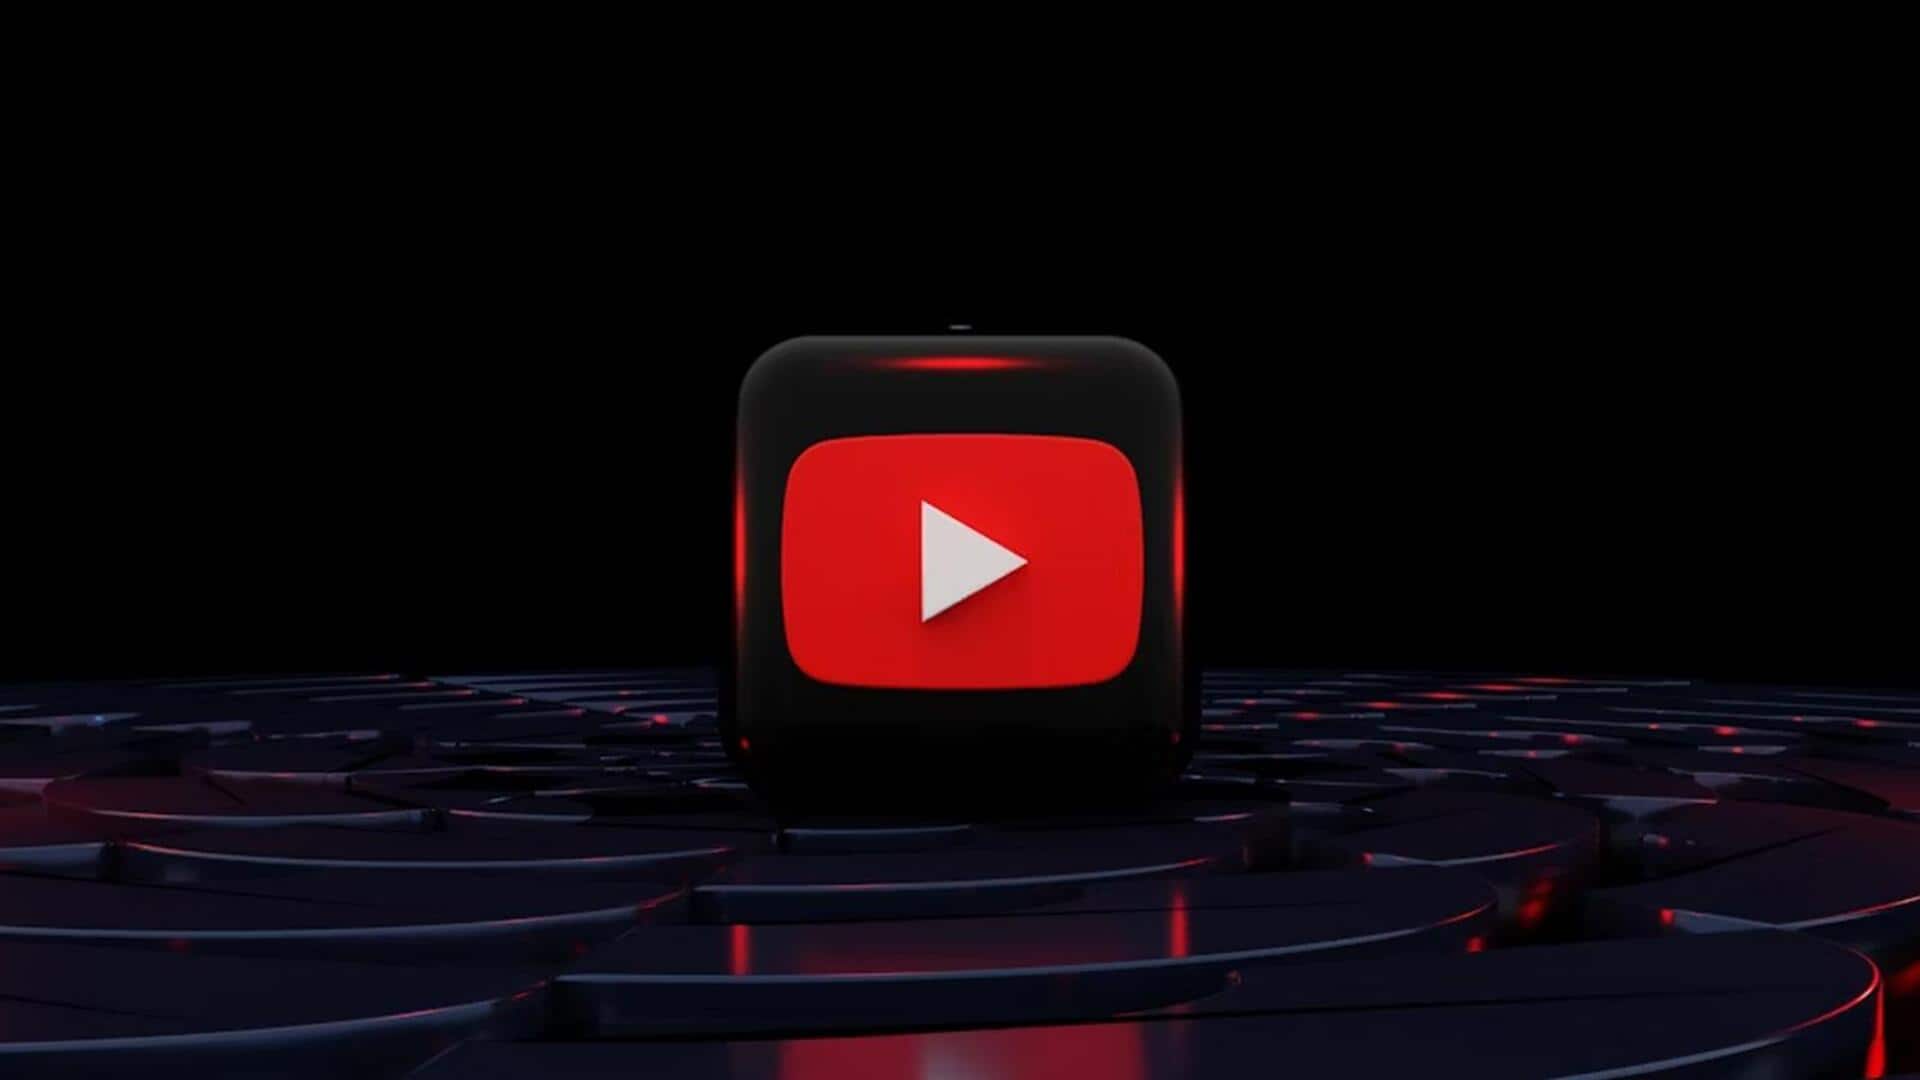 यूट्यूब सब्सक्रिप्शन गलत तरीके से खरीदने वालों के खिलाफ कंपनी कर रही कार्रवाई, रद्द करेगी सदस्यता 